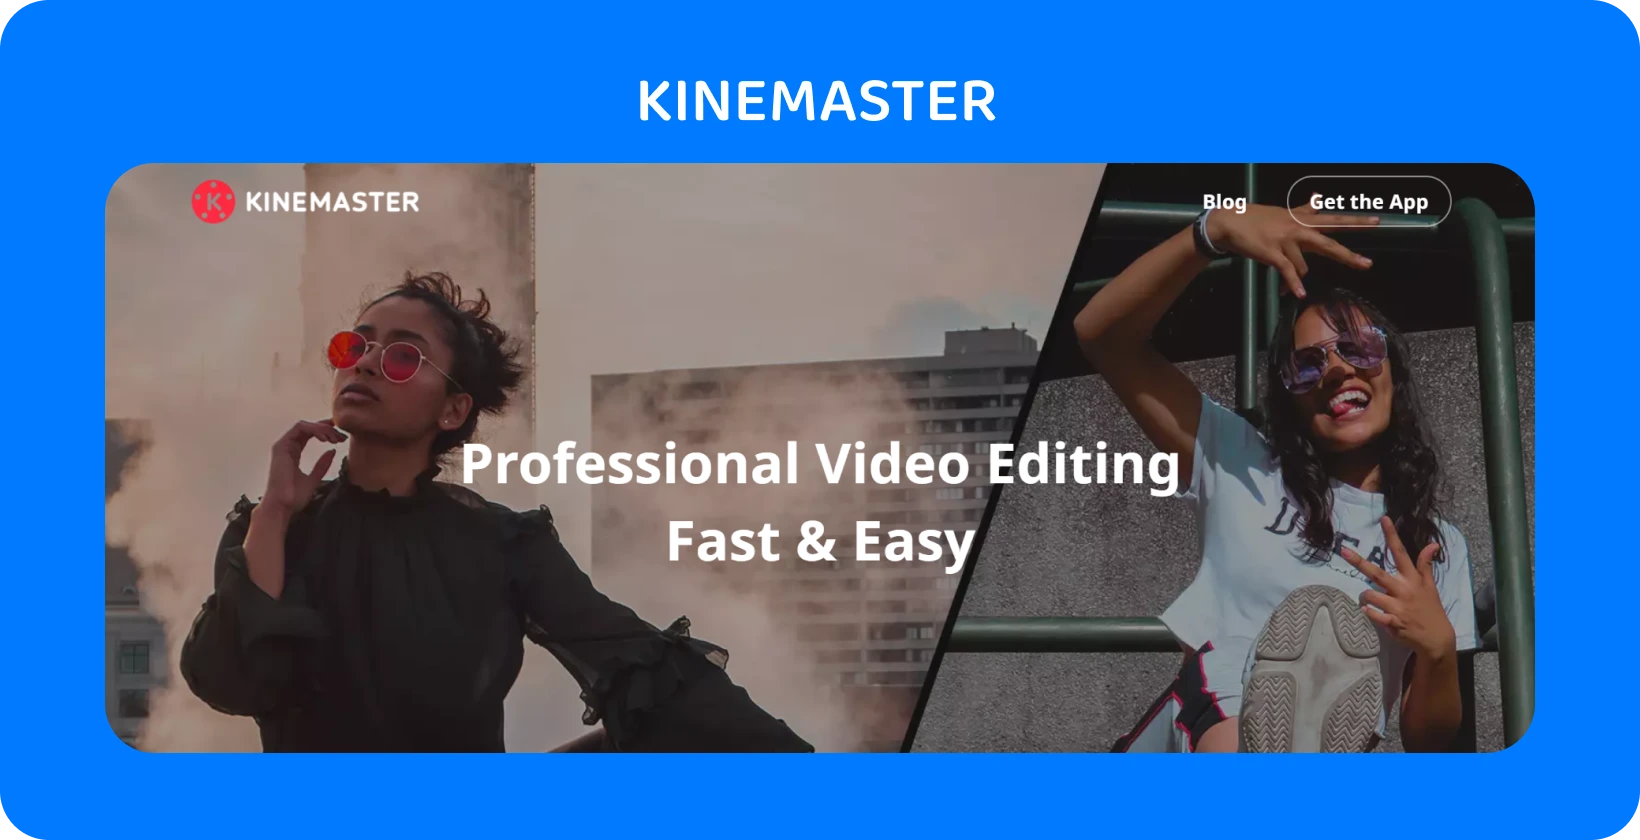 KineMaster реклама на приложения с два модела, които позират, подчертавайки професионалното редактиране на видео, което е бързо и лесно.